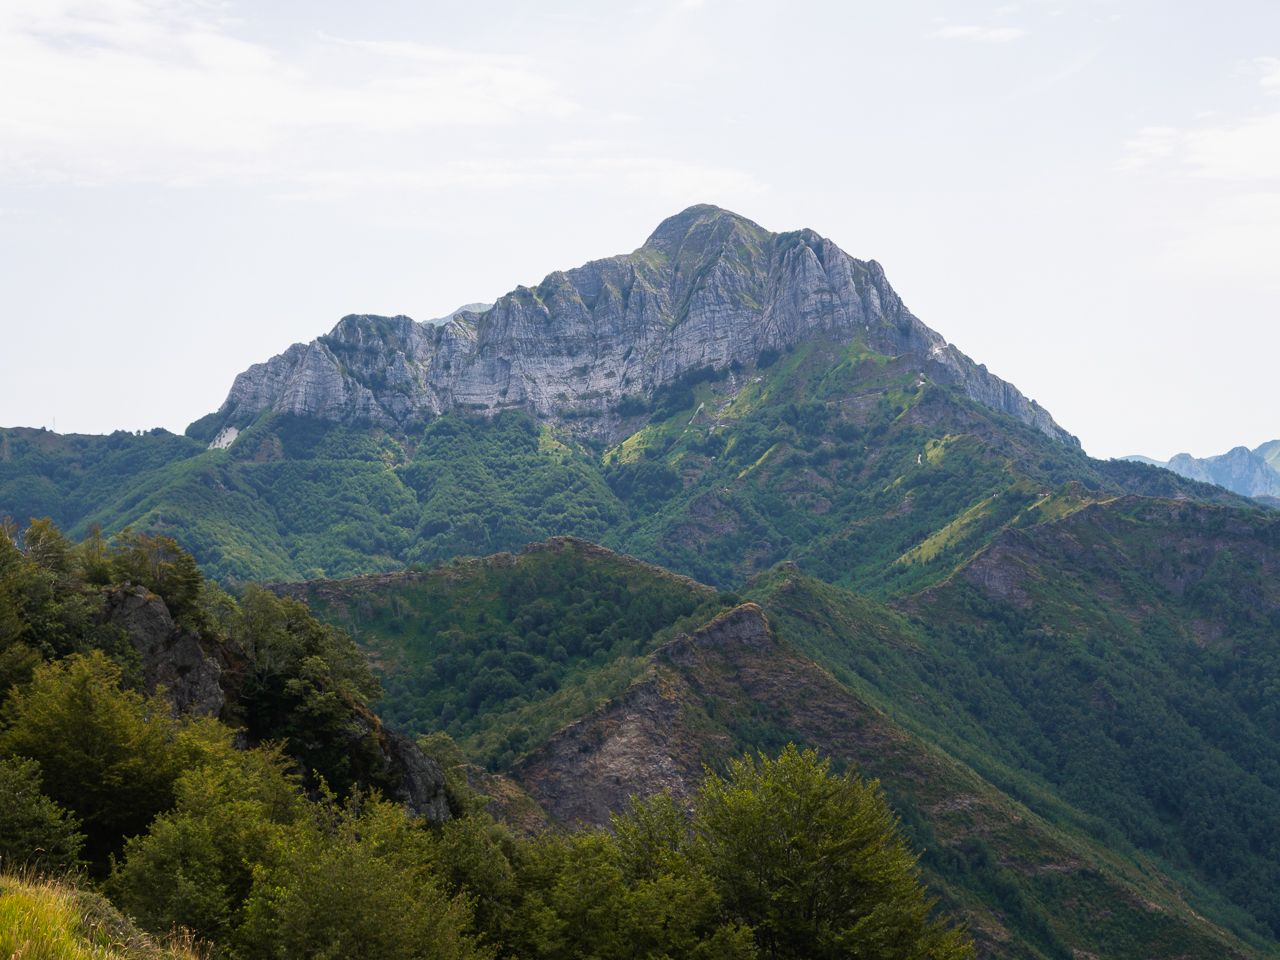 Monte Corchia visto dalla strada di accesso alla cava delle Cervaiole